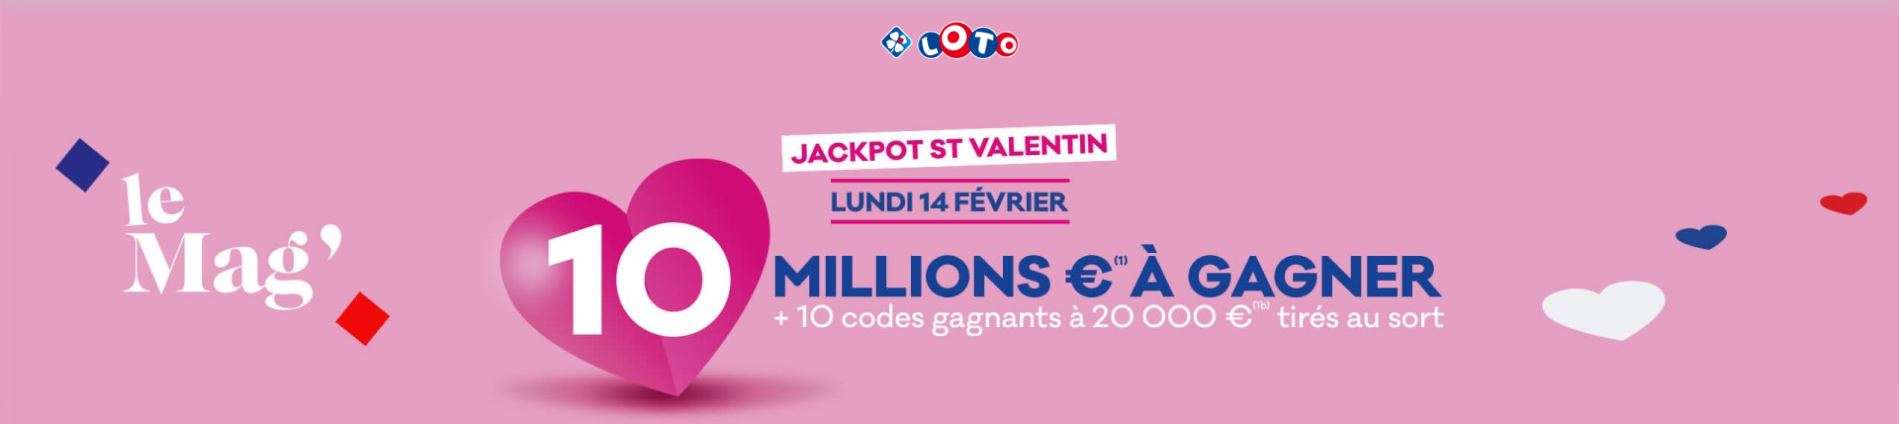 Jackpot St Valentin, le lundi 14 février 2022 © FDJ